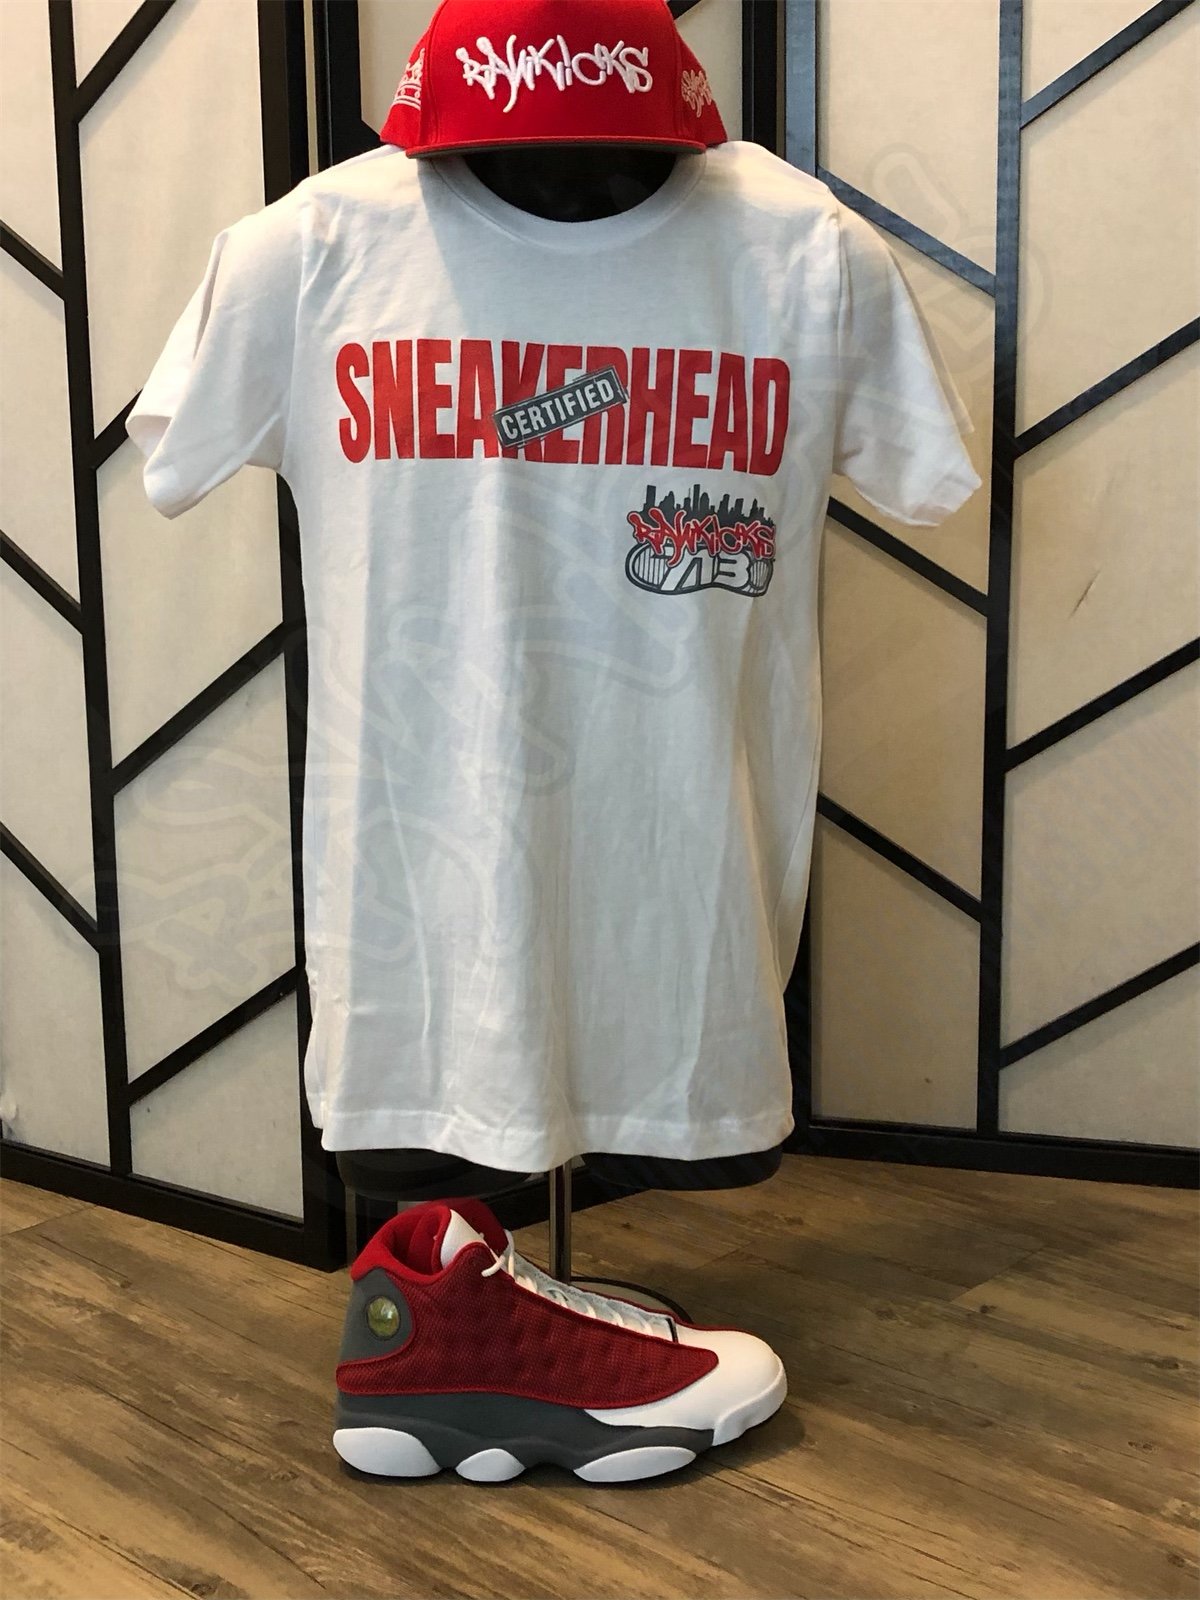 Certified Sneakerhead (Flint Red)